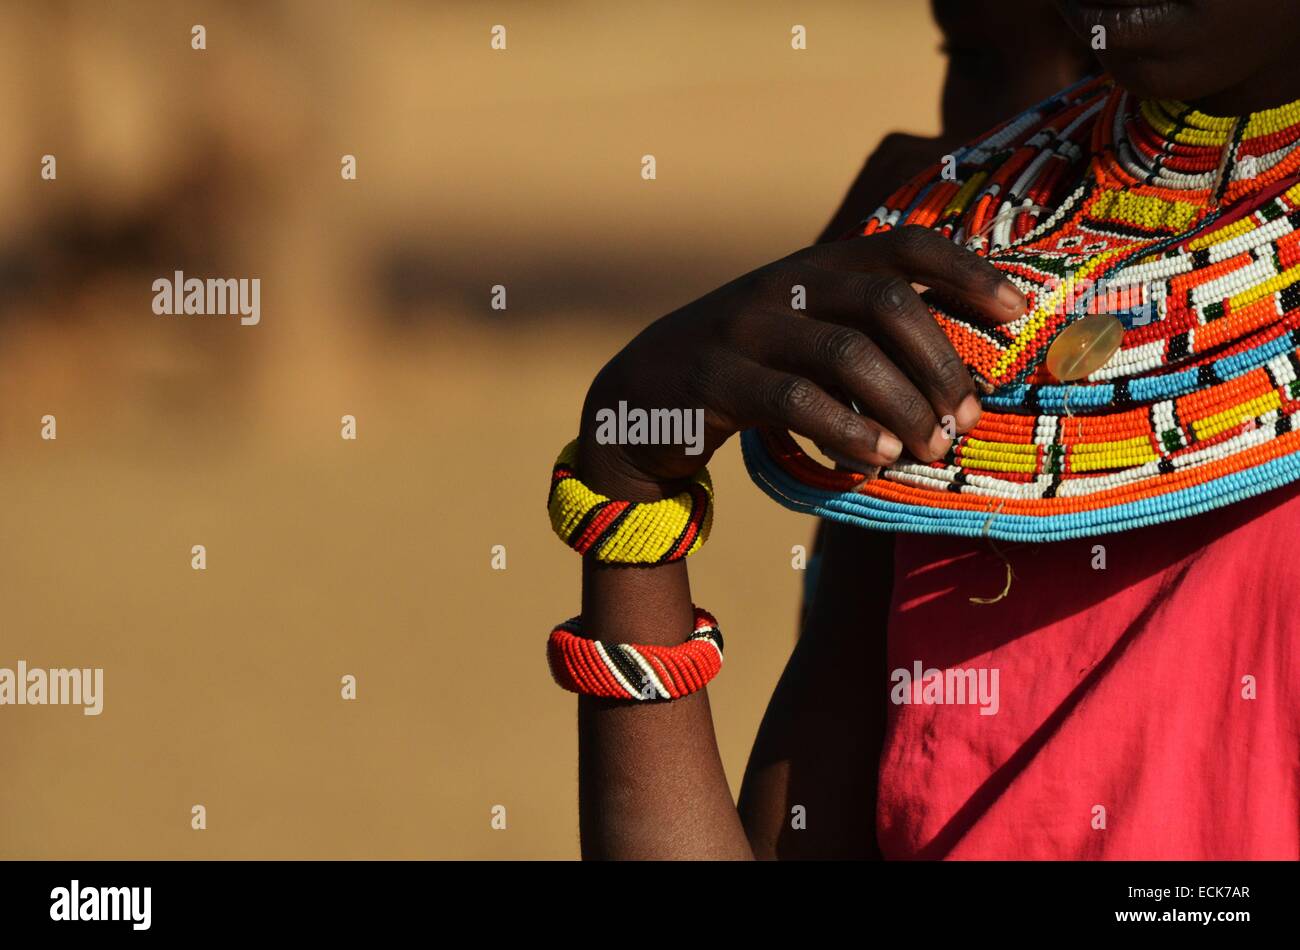 Kenya, Laikipia, Il Ngwesi, beadwork on masai man Stock Photo